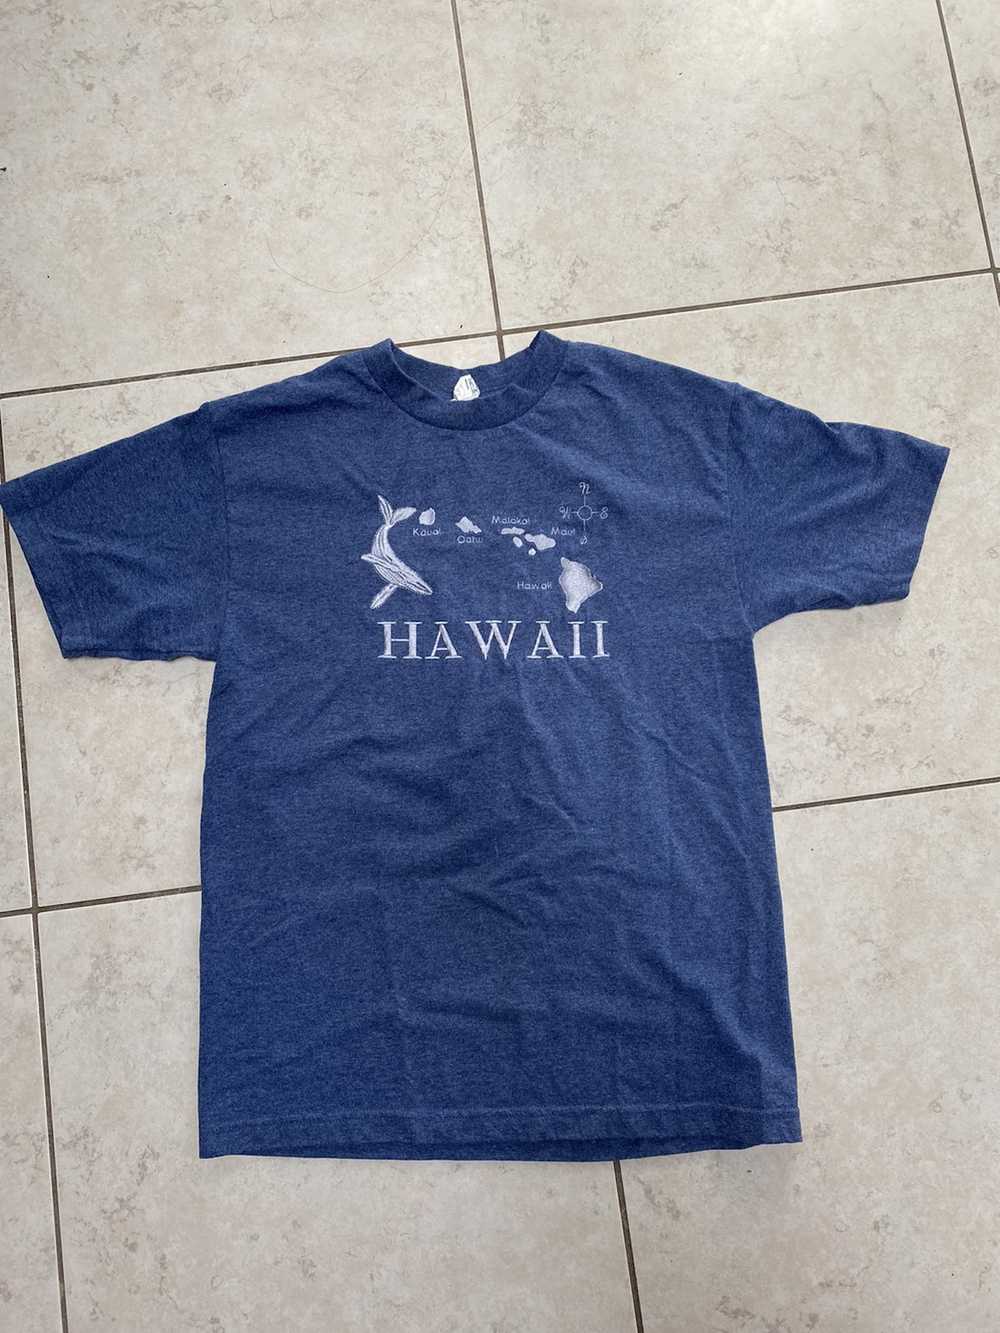 Hawaiian Shirt × Vintage hawaii embroidered tee s… - image 1